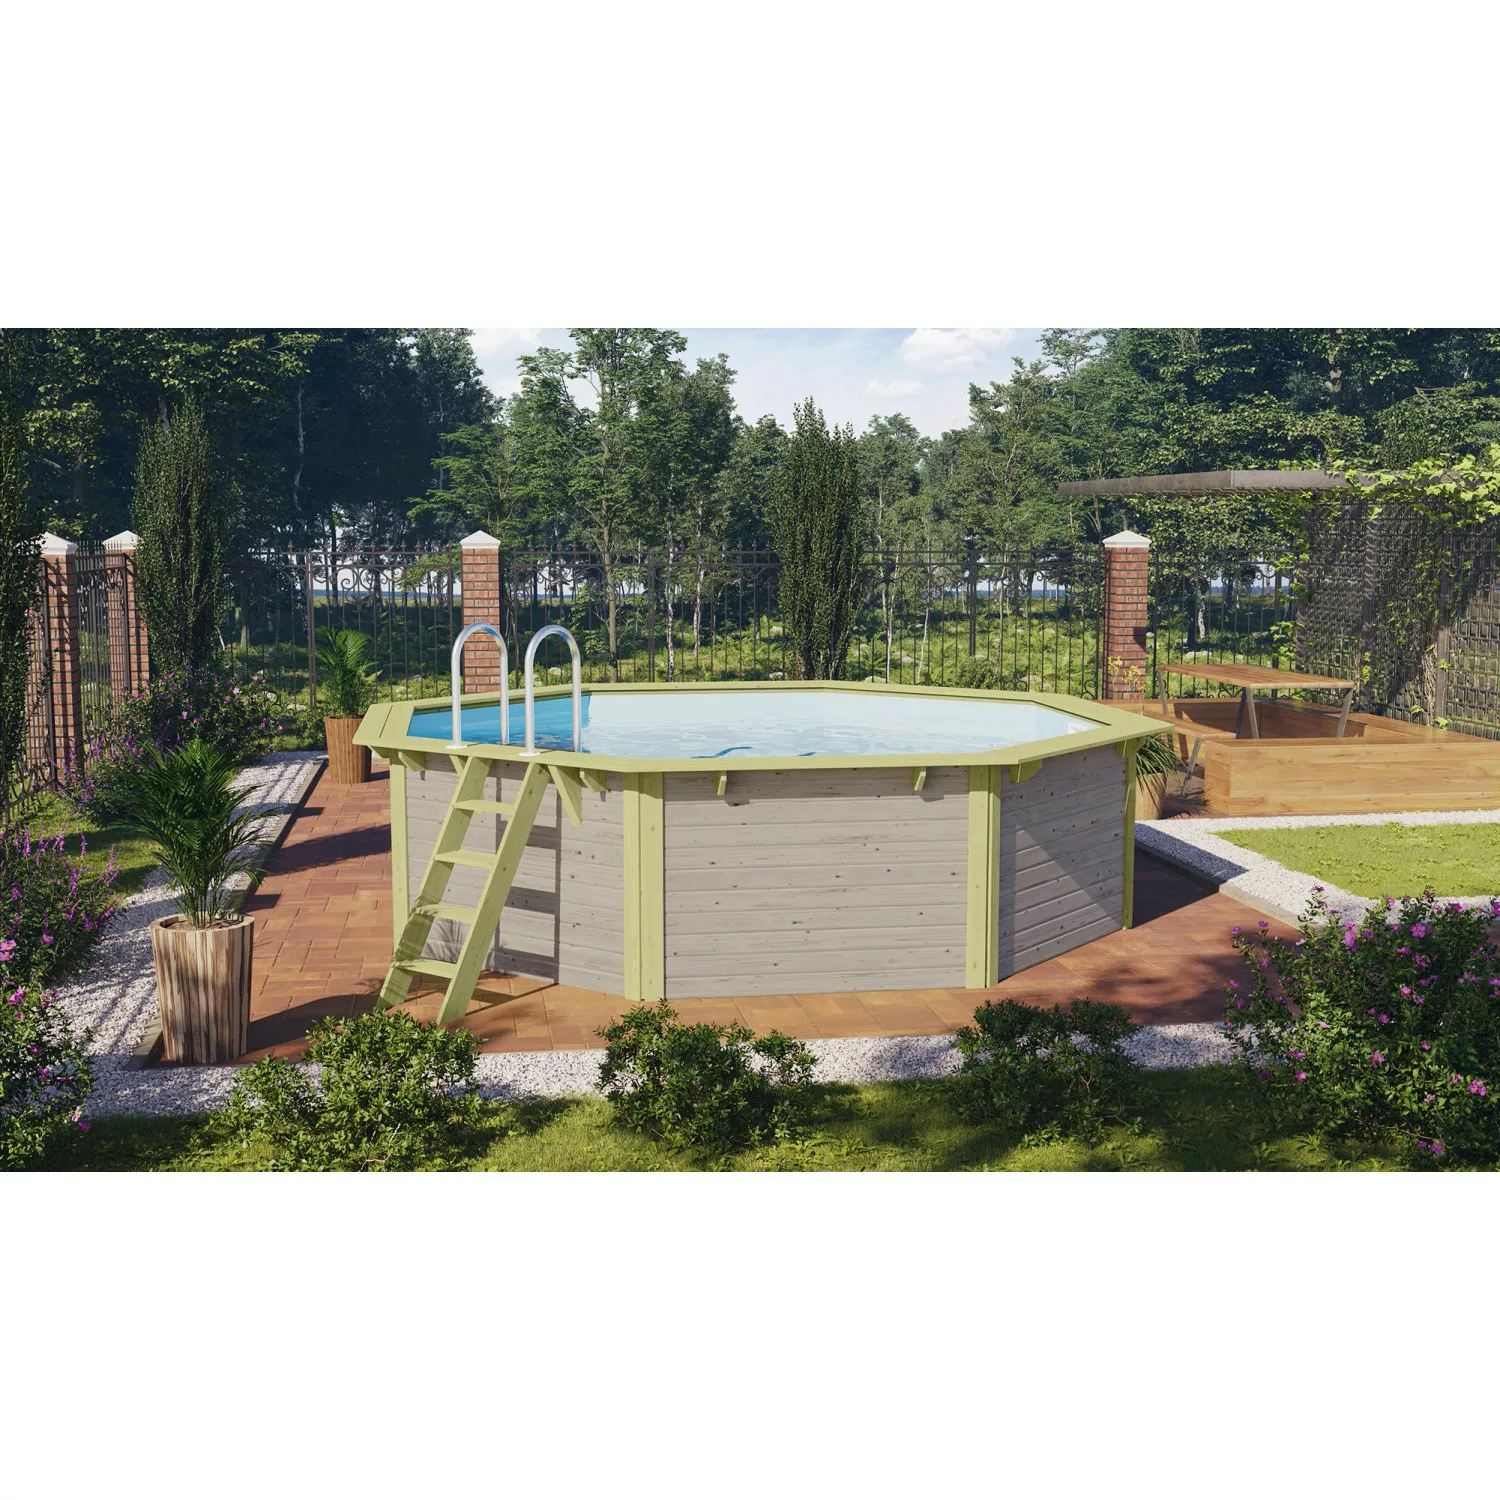 Karibu Pool Modell 2 Set inkl. Filteranlage Skimmer Wassergrau günstig online kaufen